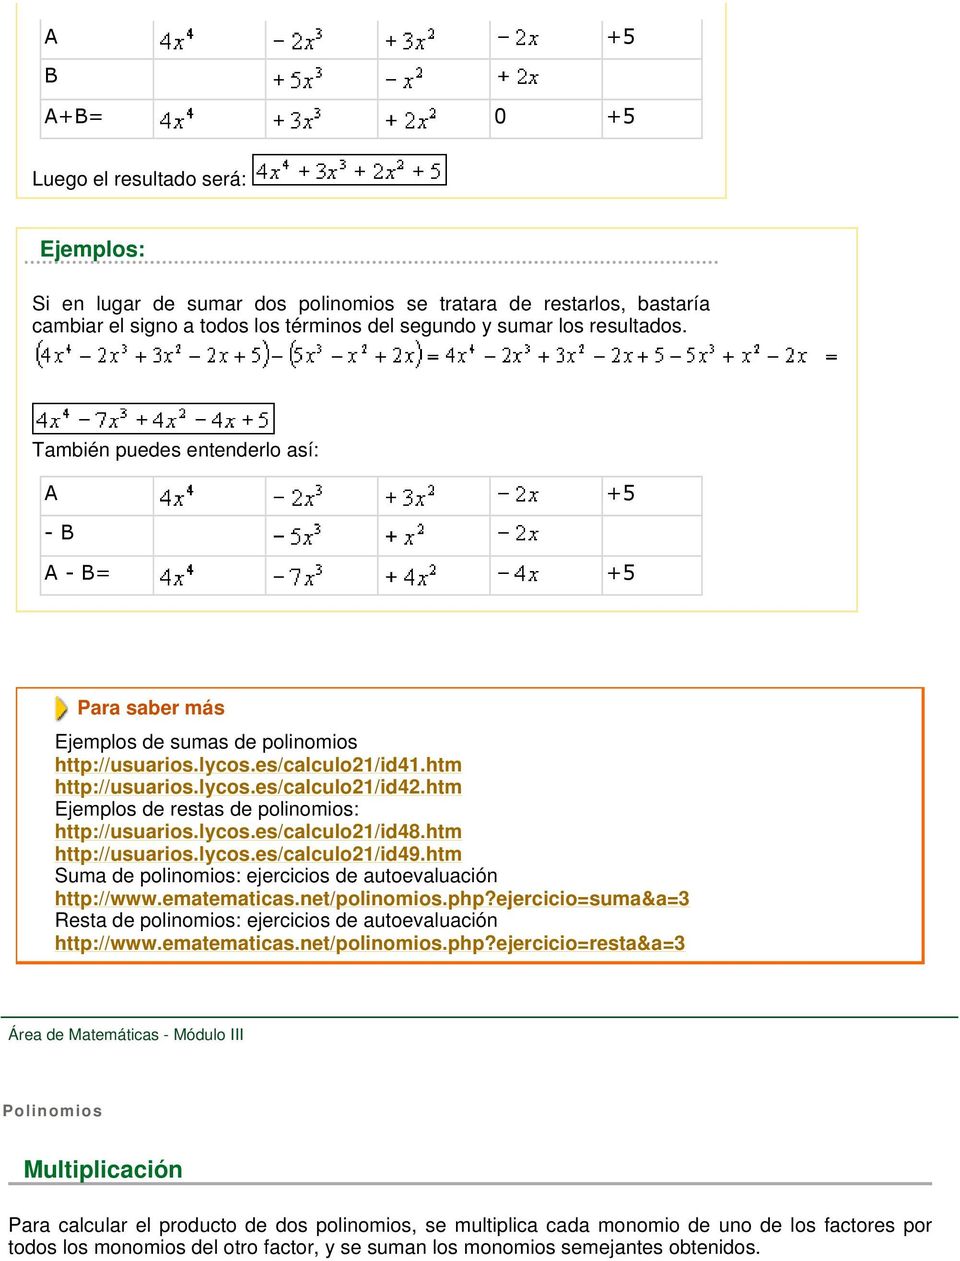 htm Ejemplos de restas de polinomios: http://usuarios.lycos.es/calculo21/id48.htm http://usuarios.lycos.es/calculo21/id49.htm Suma de polinomios: ejercicios de autoevaluación http://www.ematematicas.